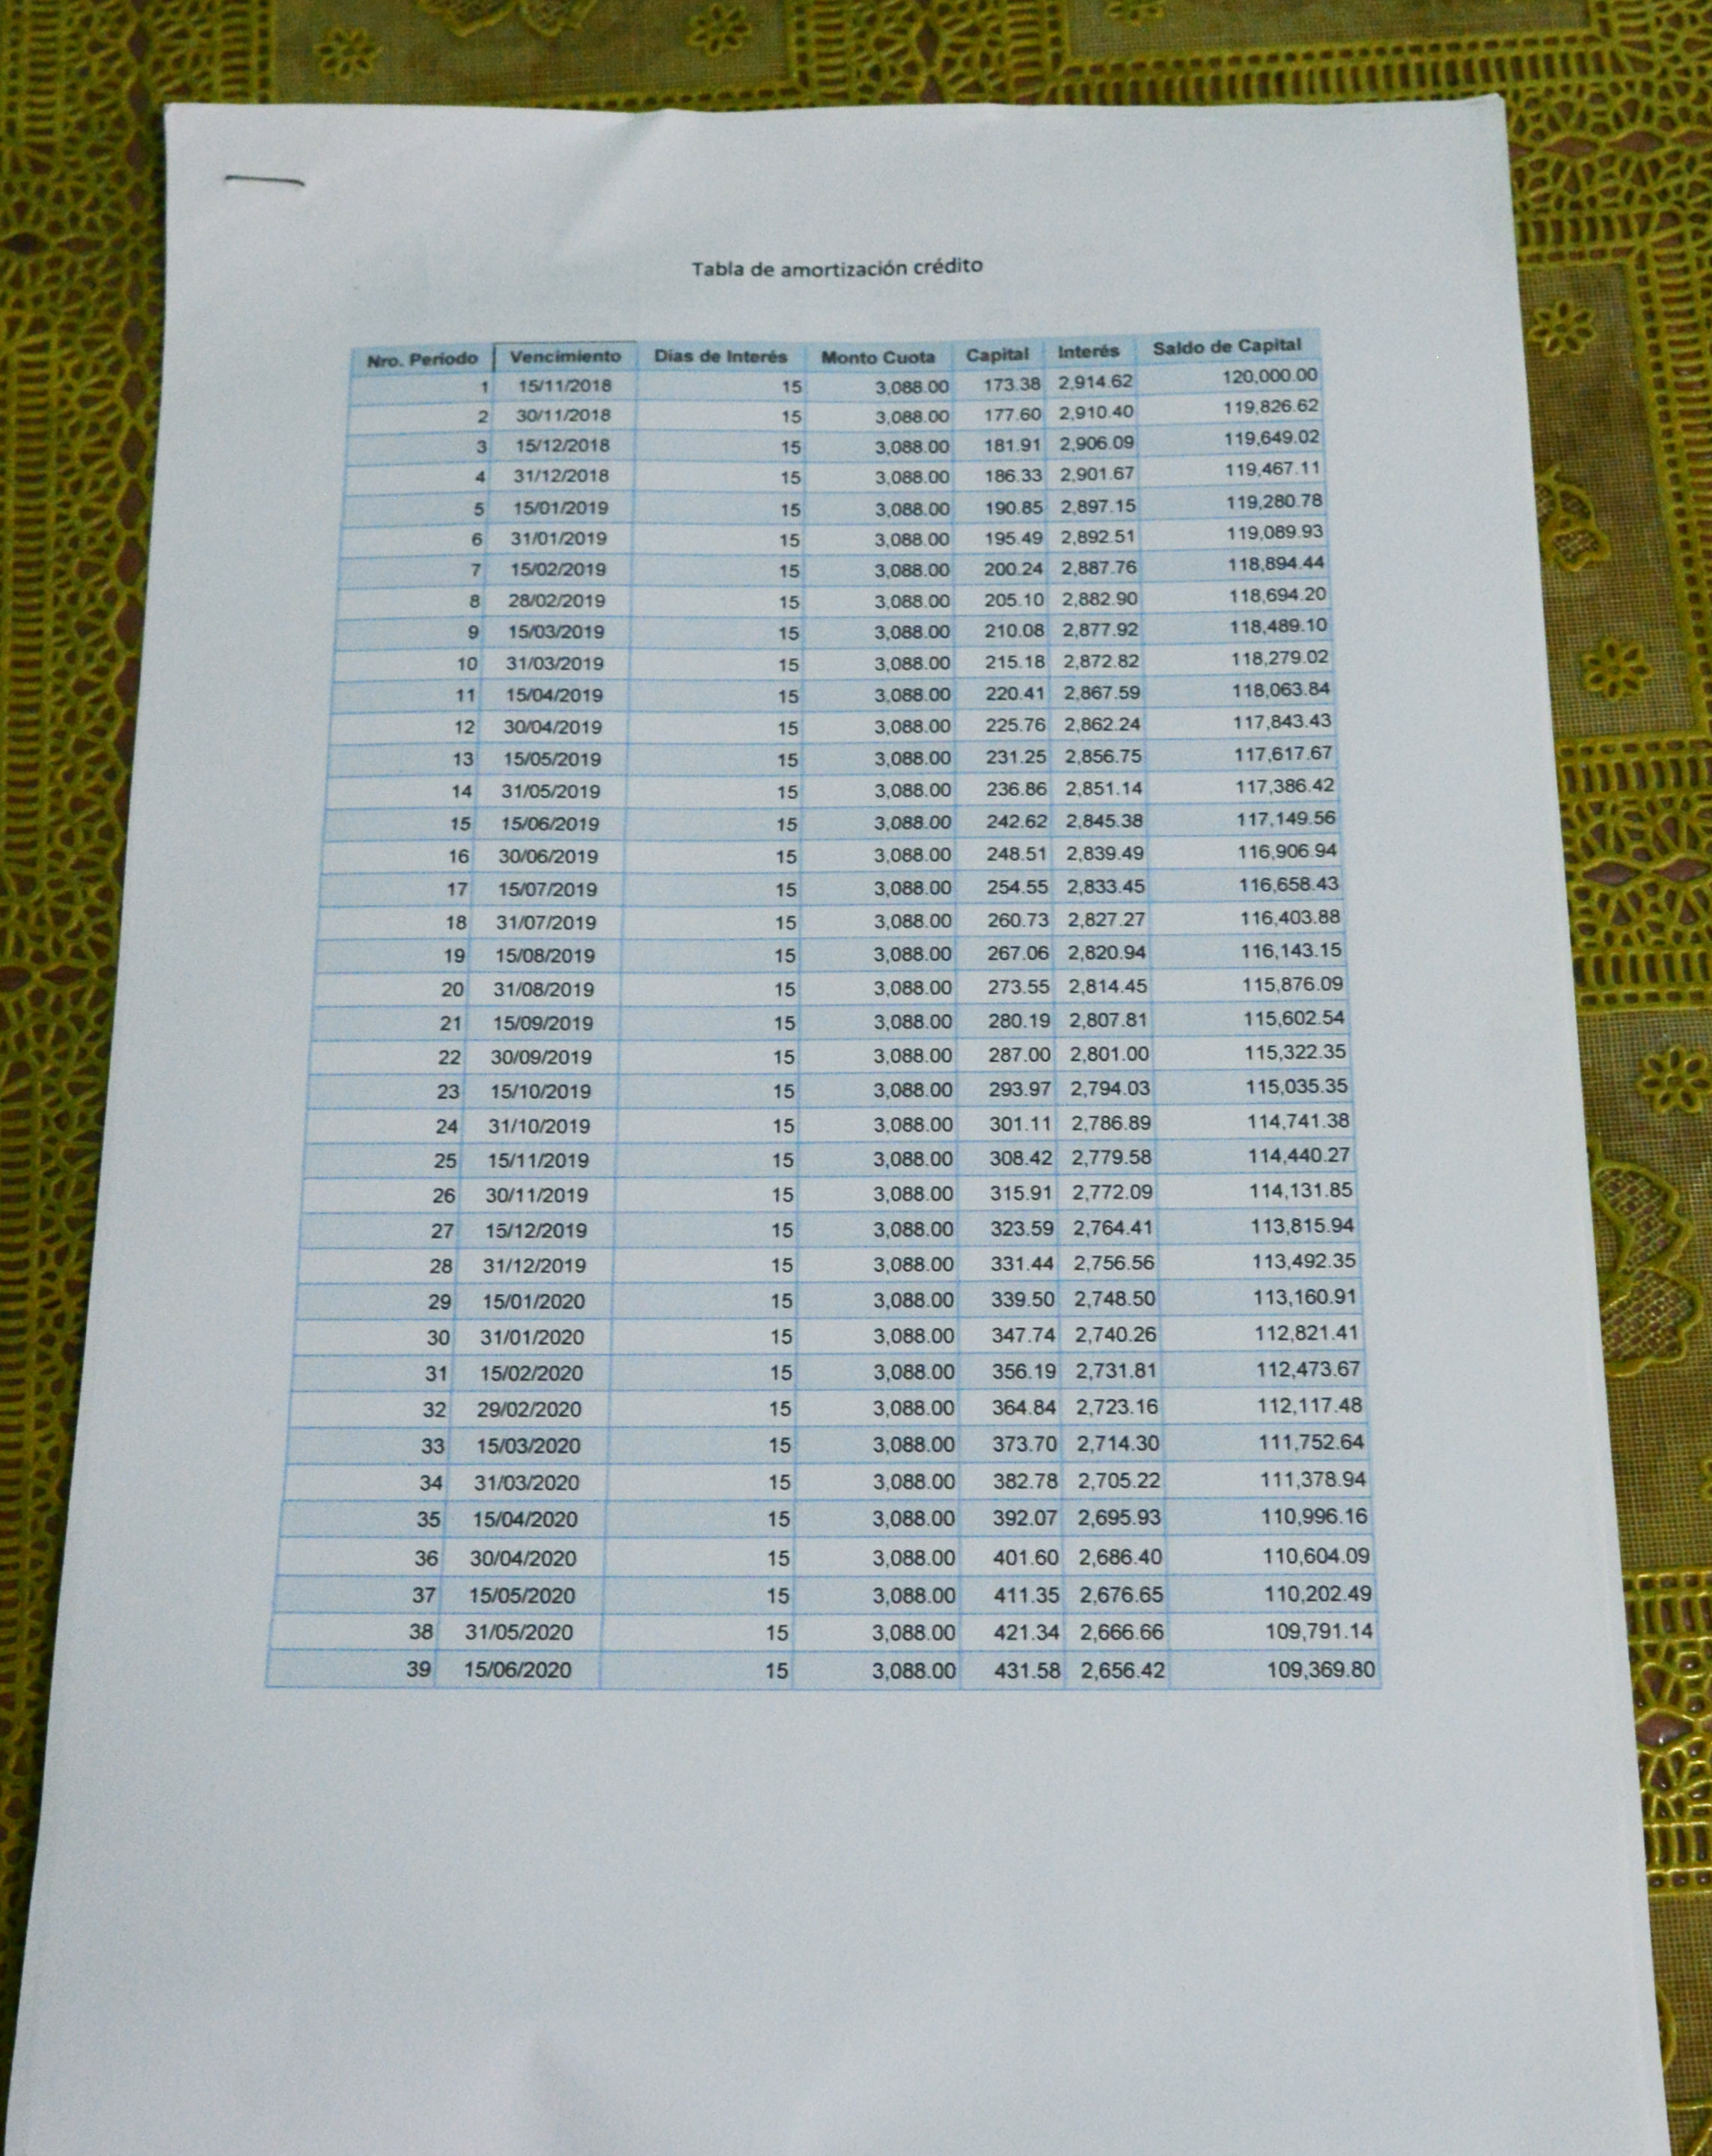 Esta tabla de amortización muestra los descuentos quincenales realizados al salario del usuario crediticio, cuánto va a pago de capital y lo que corresponde a pago de intereses.